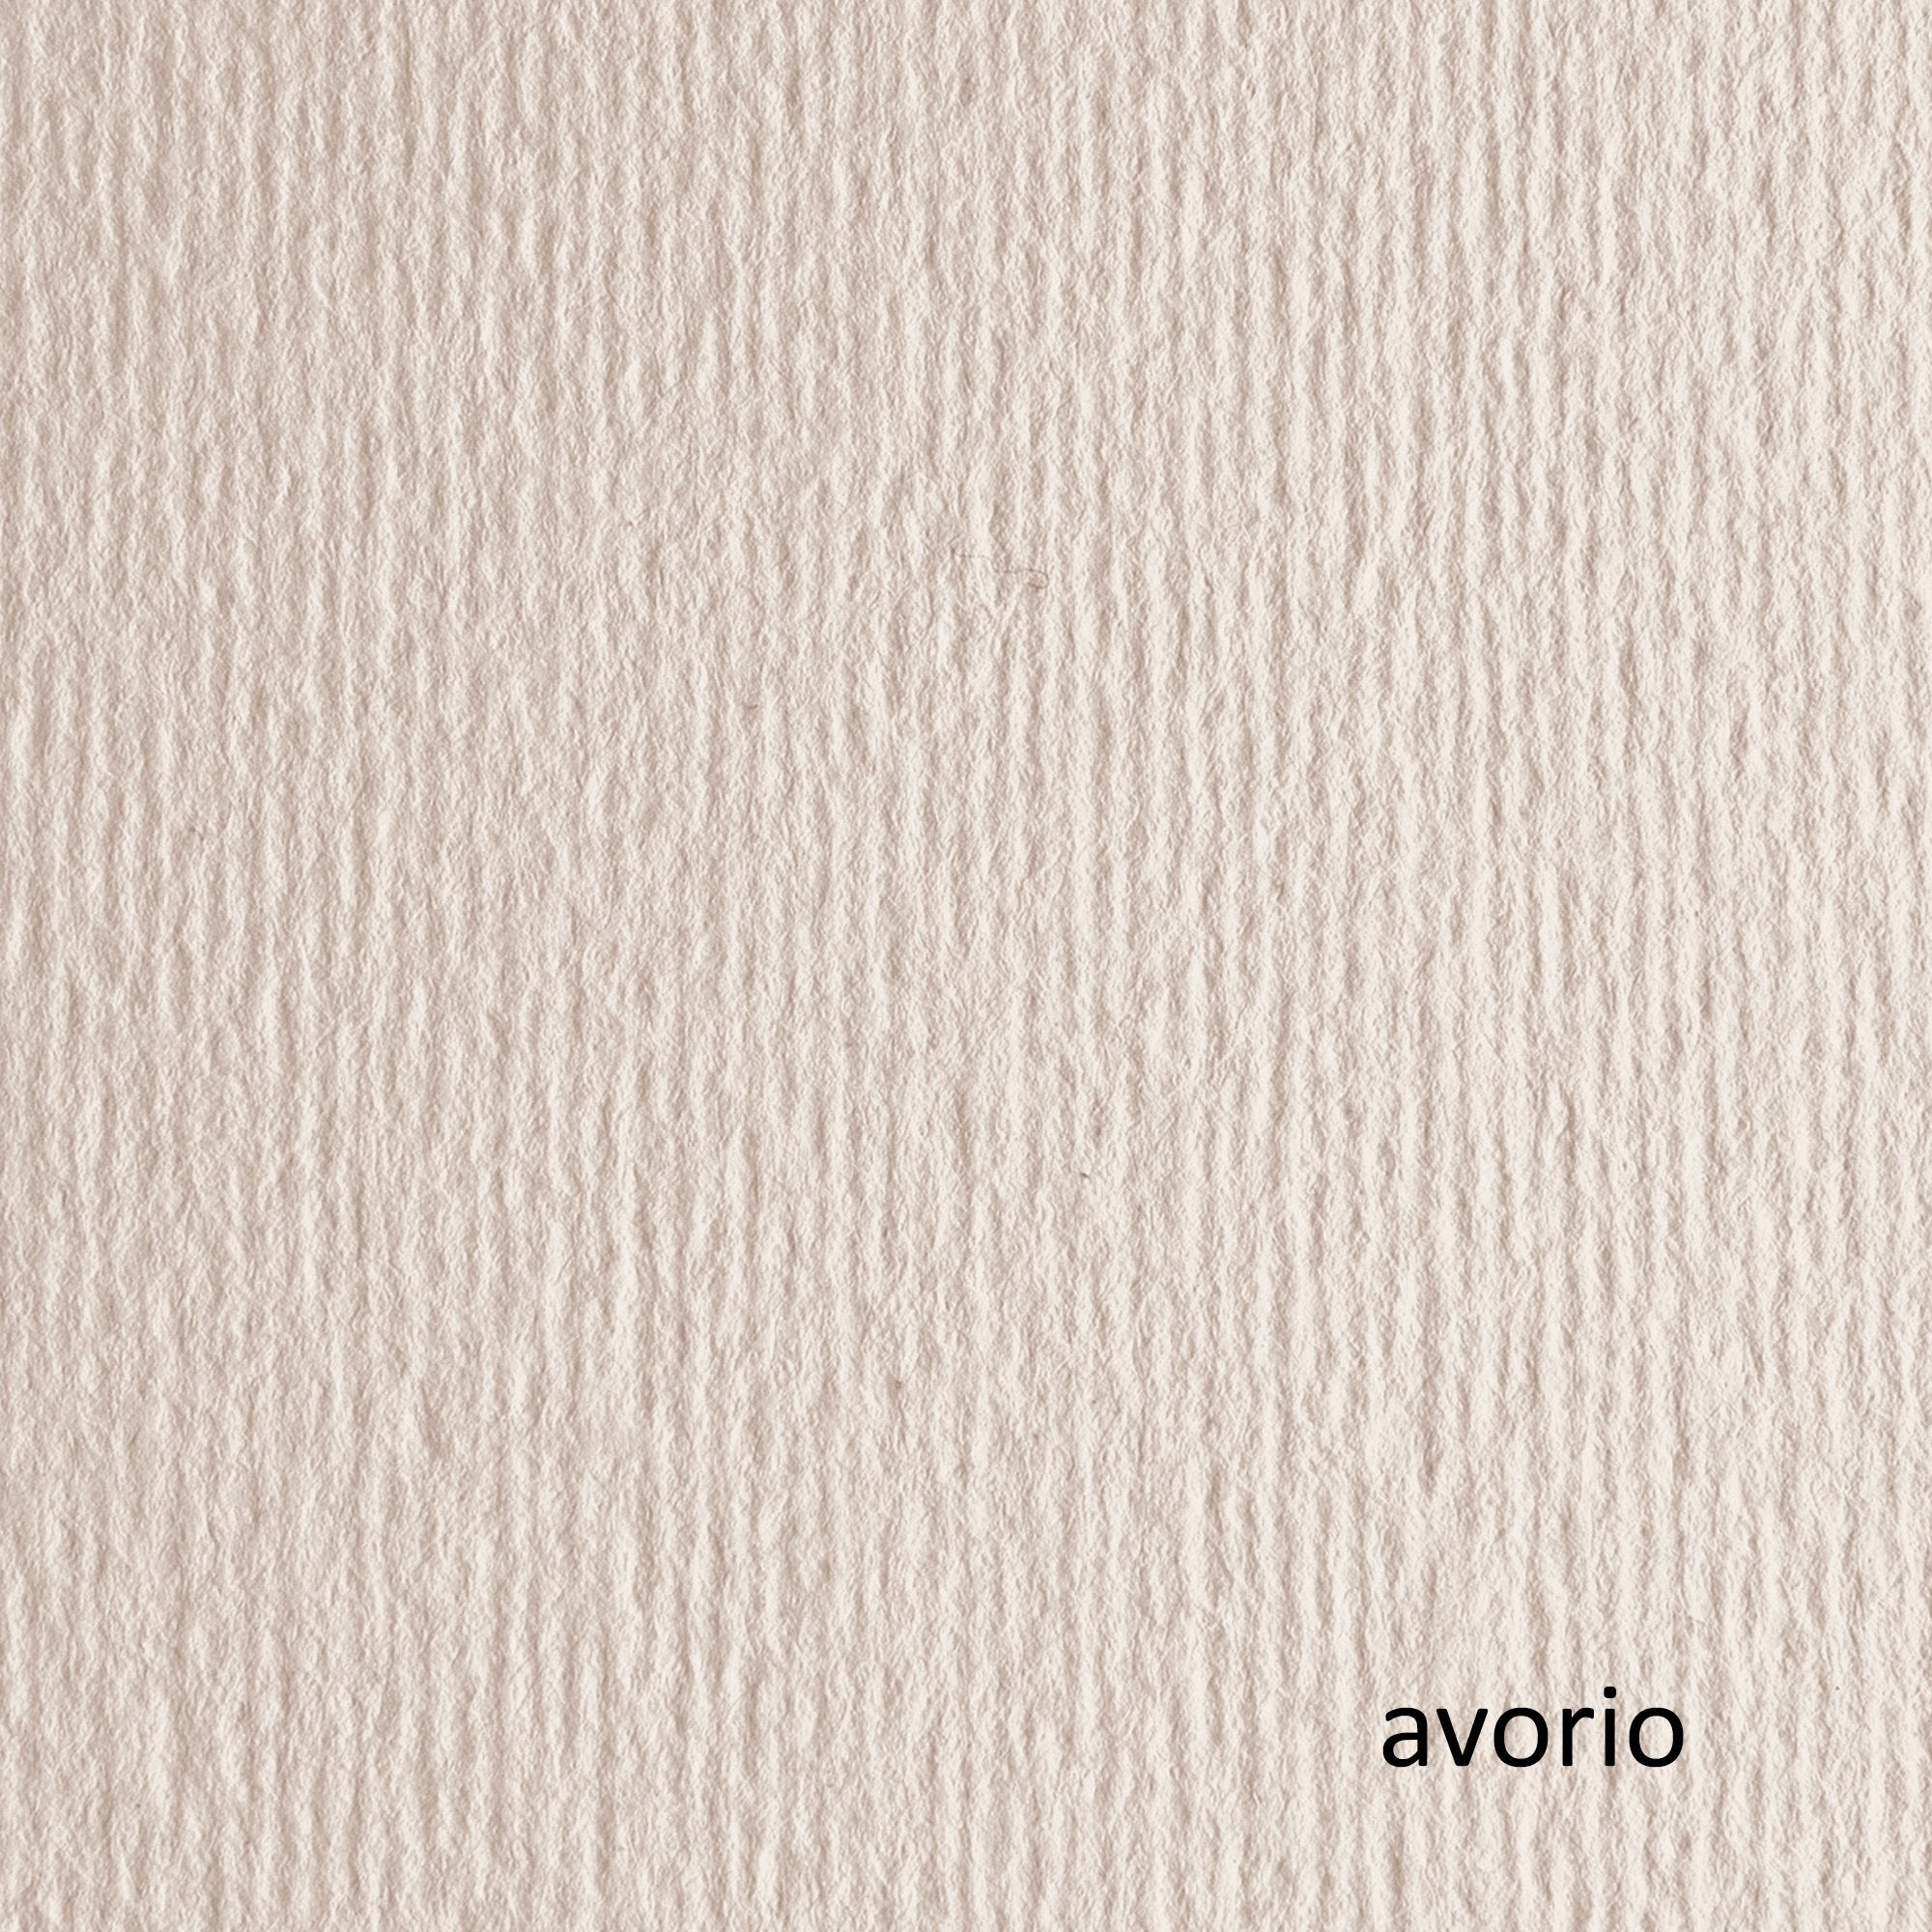 fabriano-blister-10fg-cartoncino-70x100-220gr-avorio-101-elle-erre